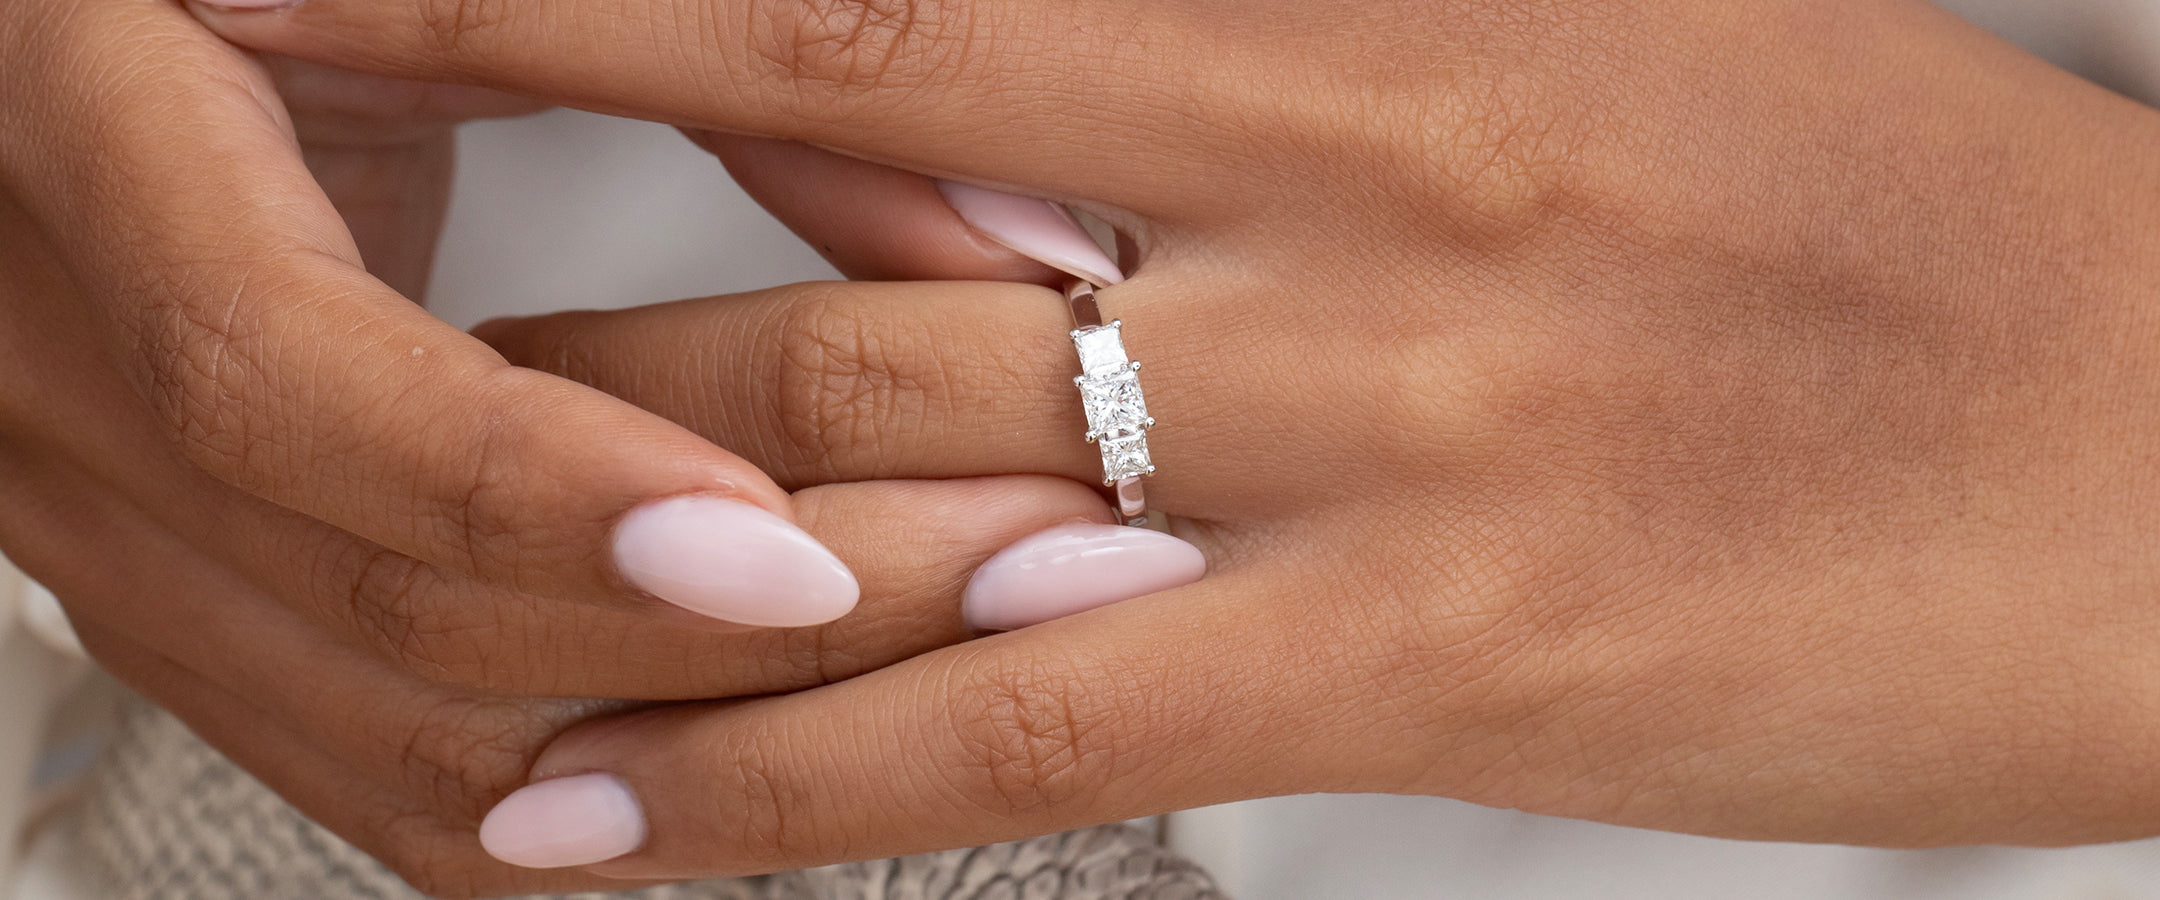 Princess Cut Diamond Engagement Rings at Gear Jewellers Dublin